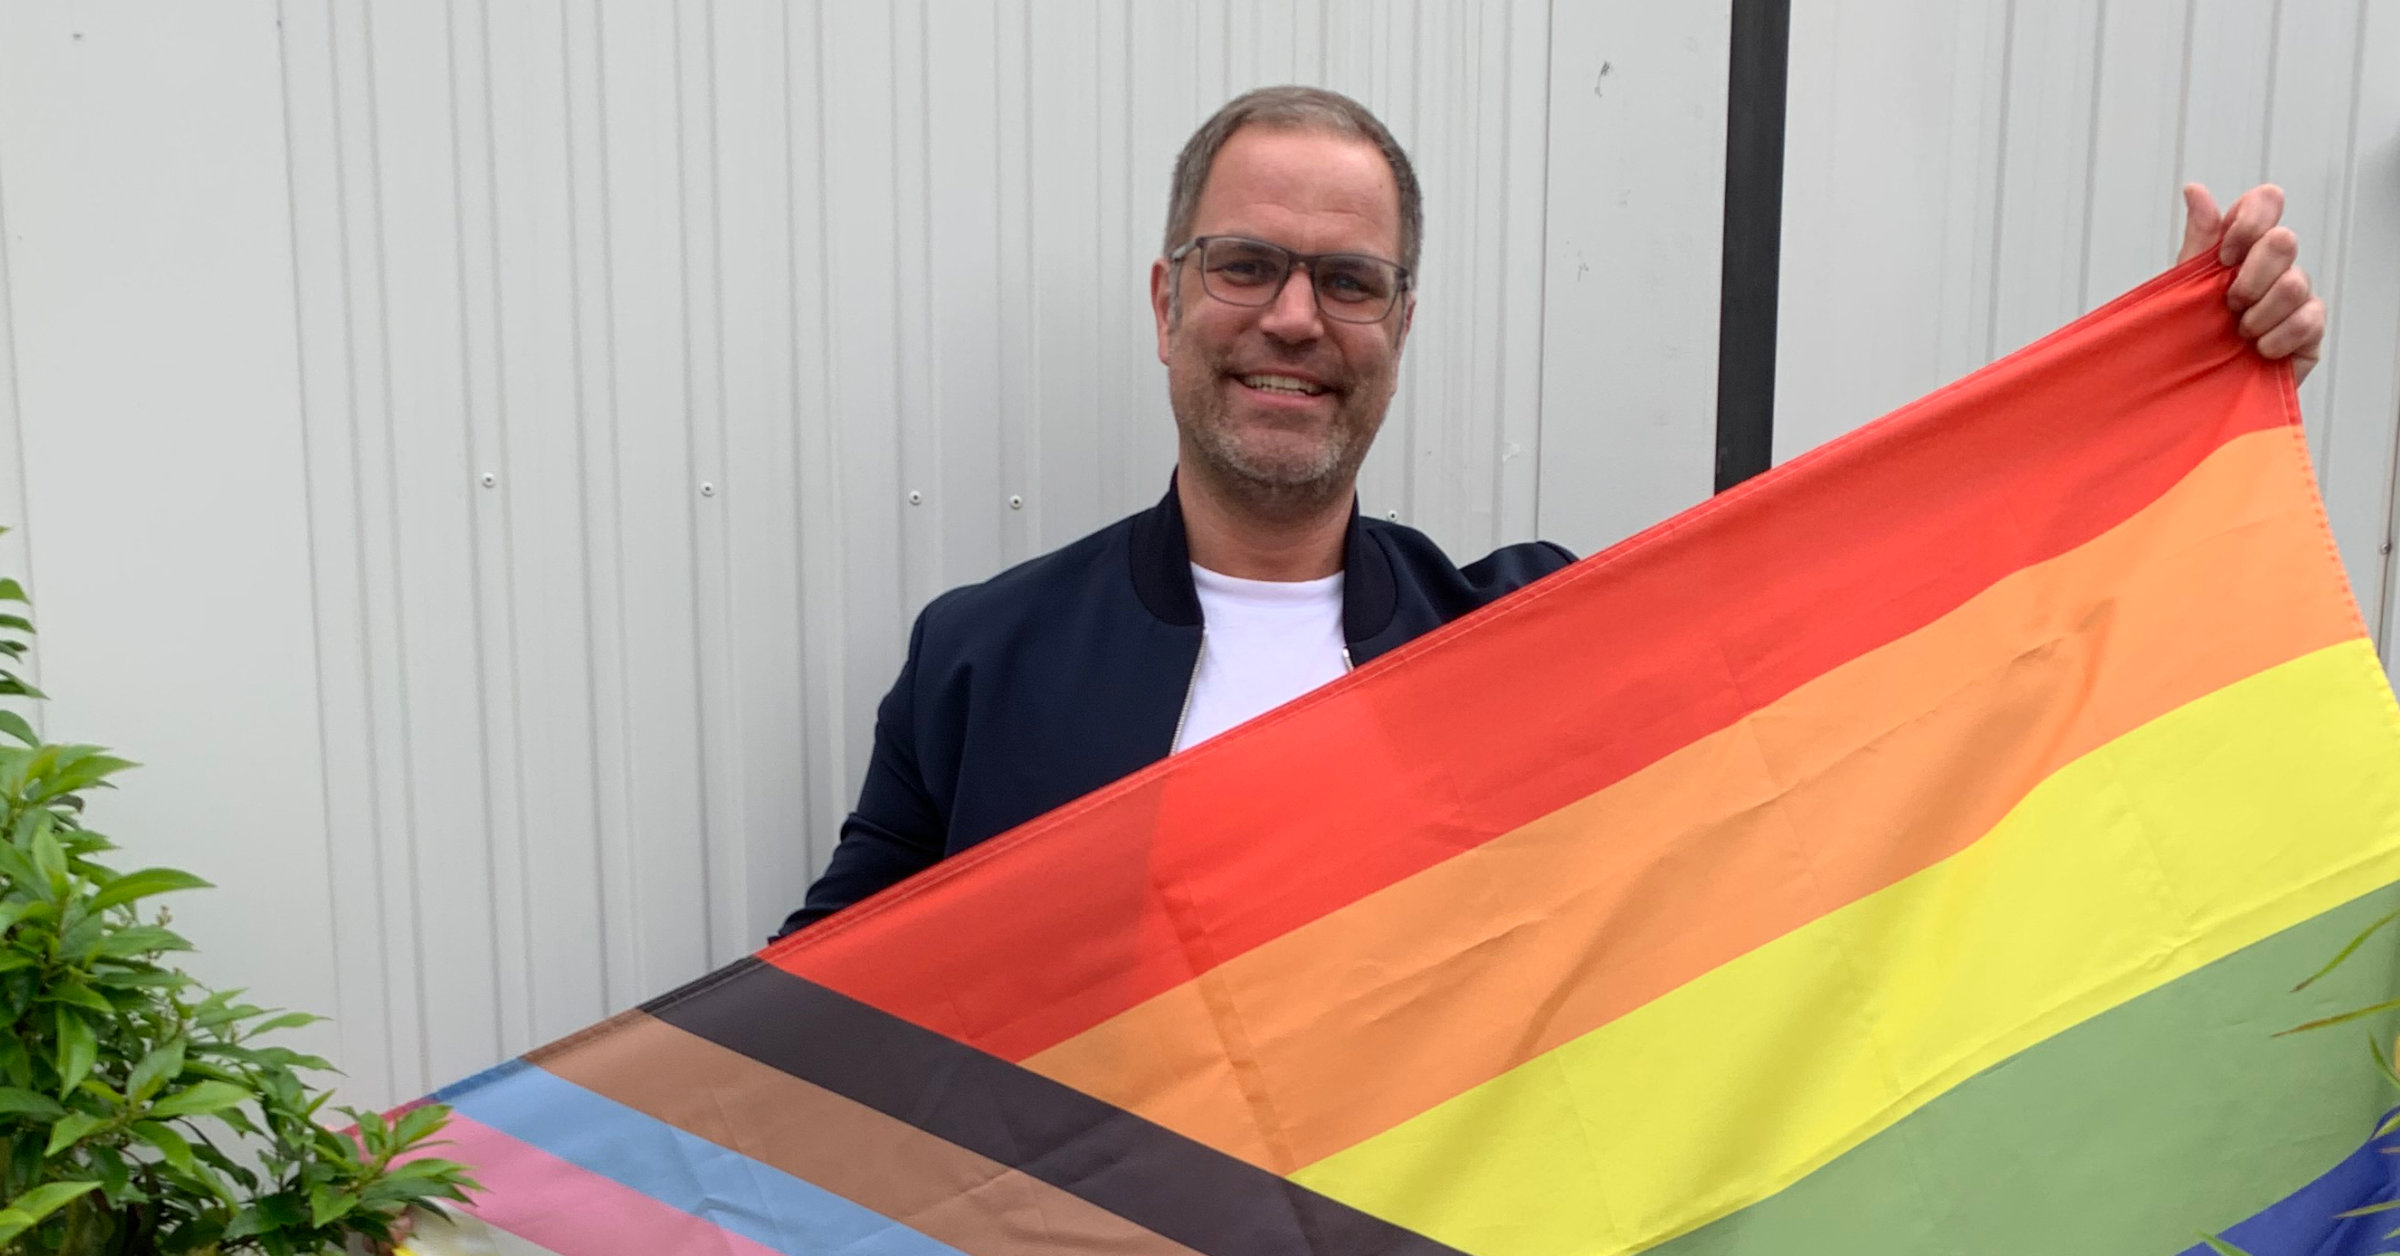 PRIDE 2023: Meet Members of UNITE, our LGBTQI+ employee resource group